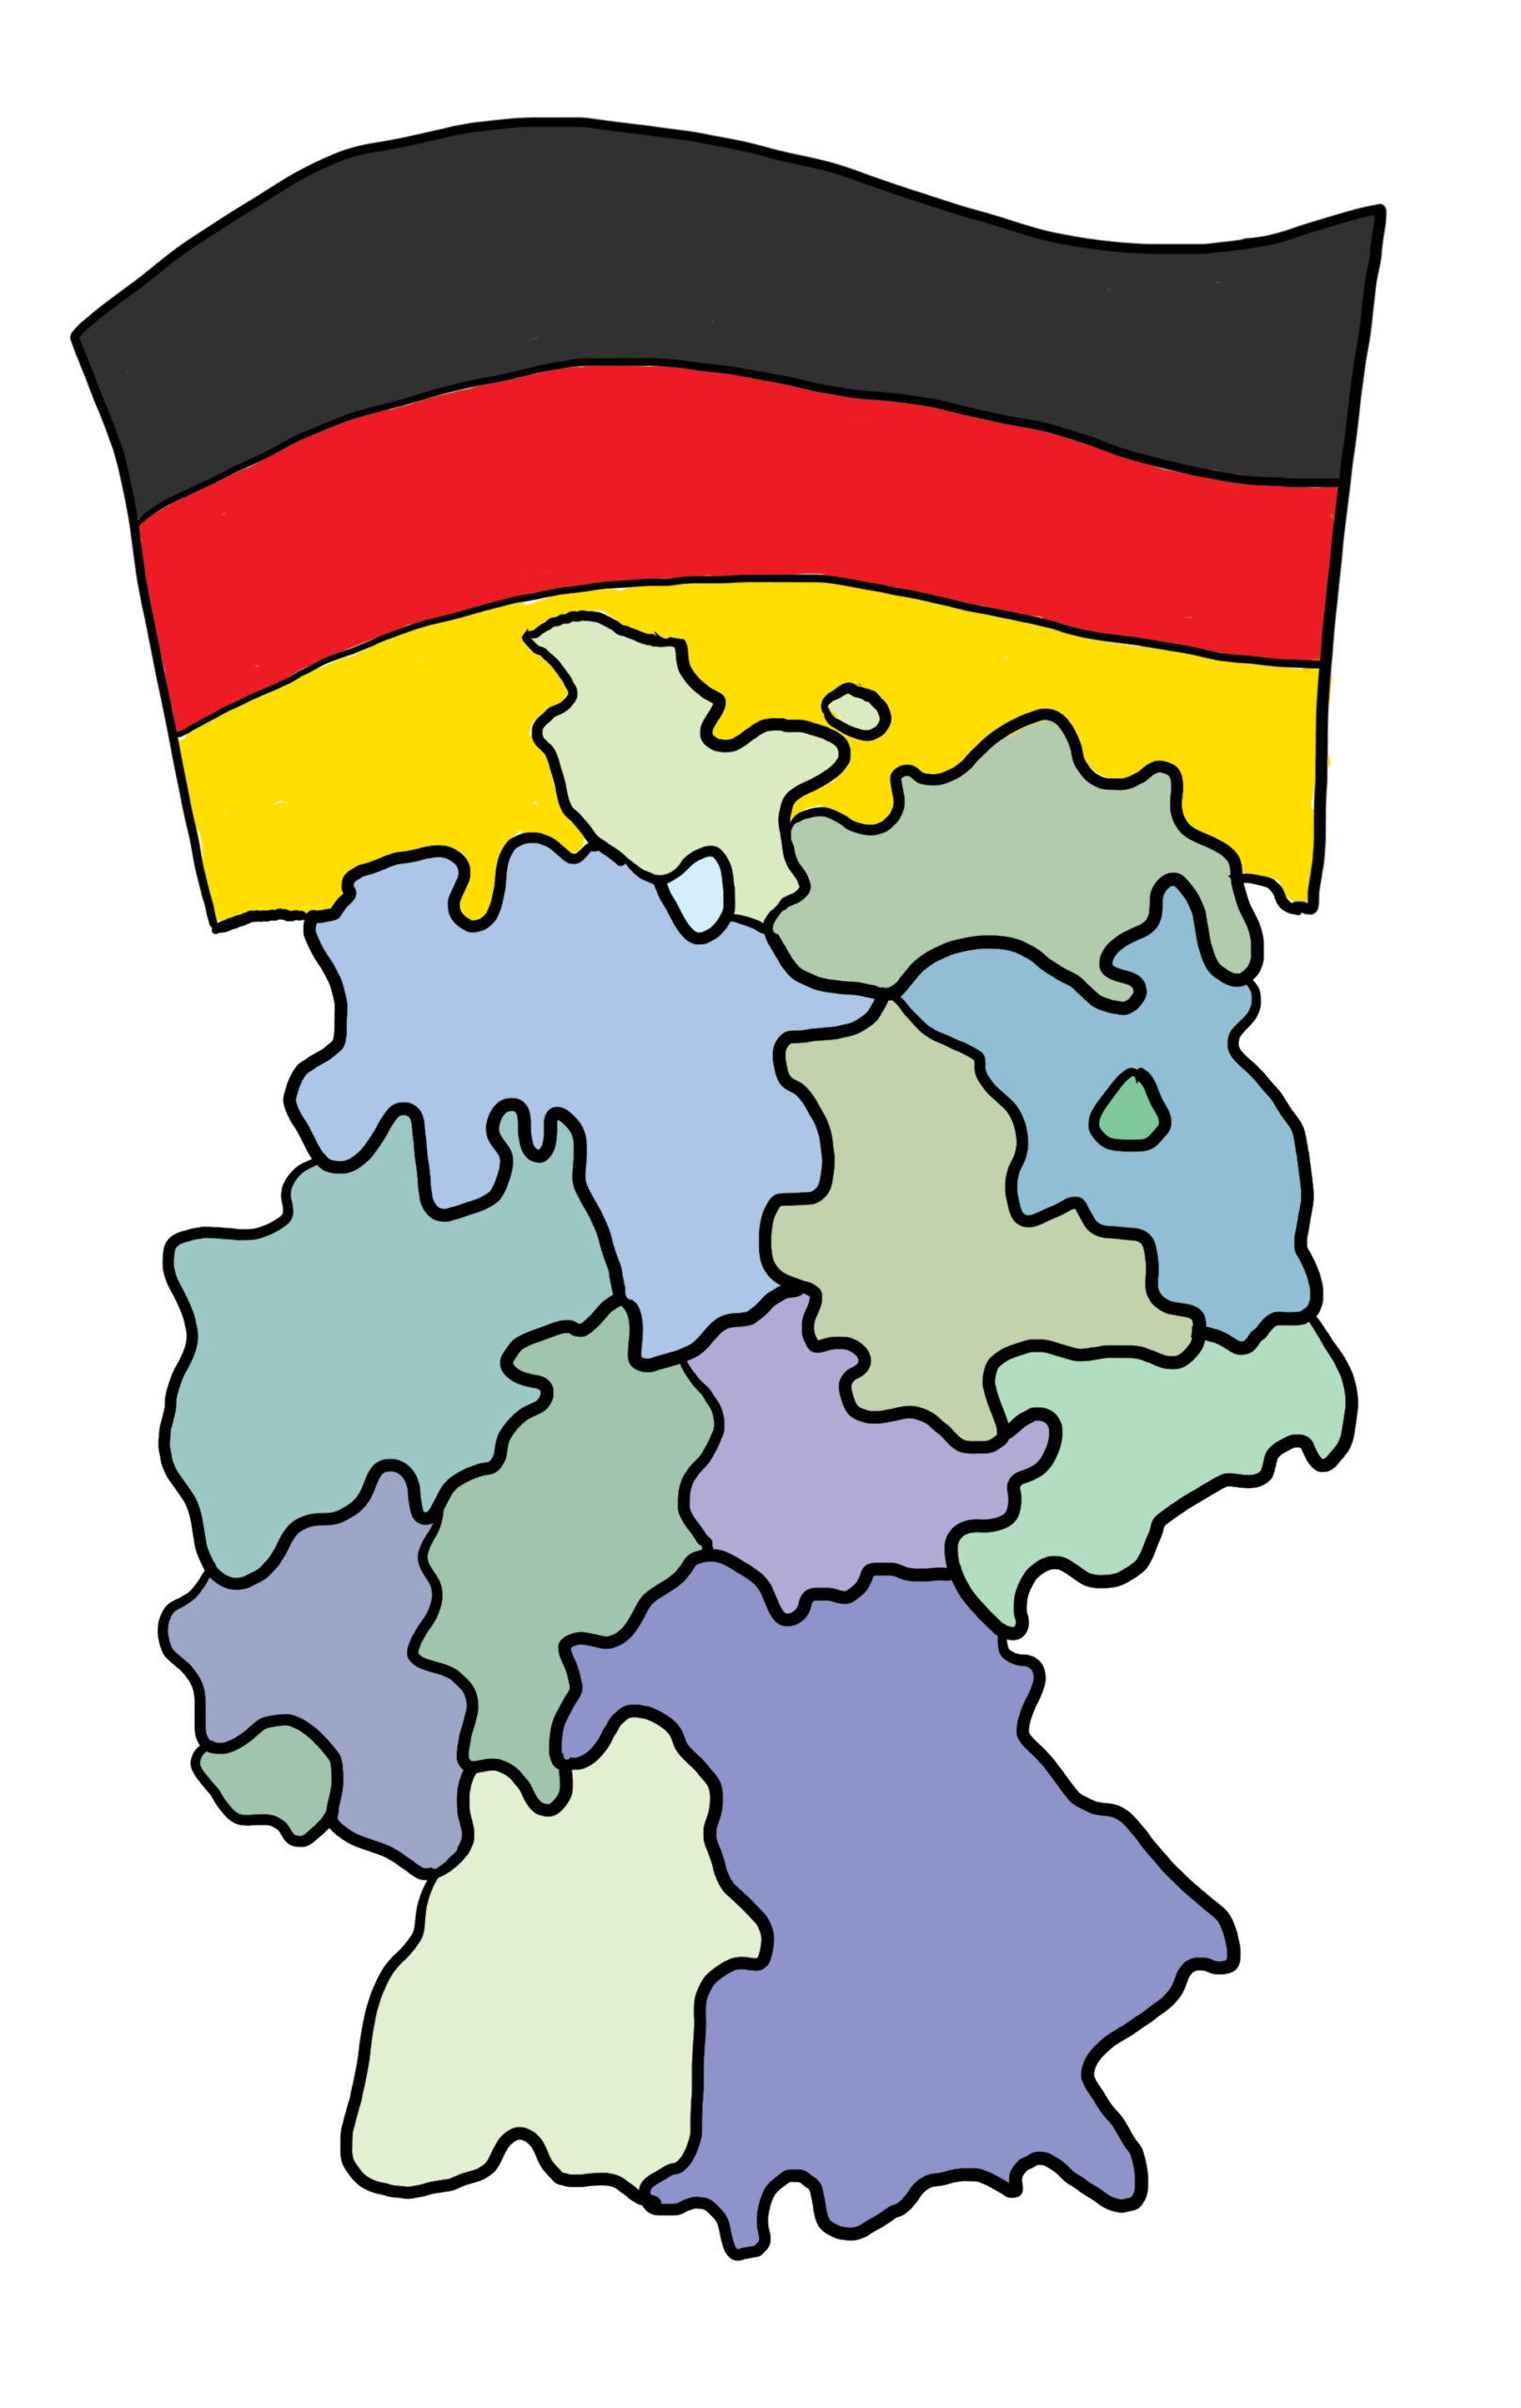 Eine schematische Karte der Bundesrepublik Deutschland. Man erkennt die 16 Länder. Über der Karte ist die deutsche Flagge.